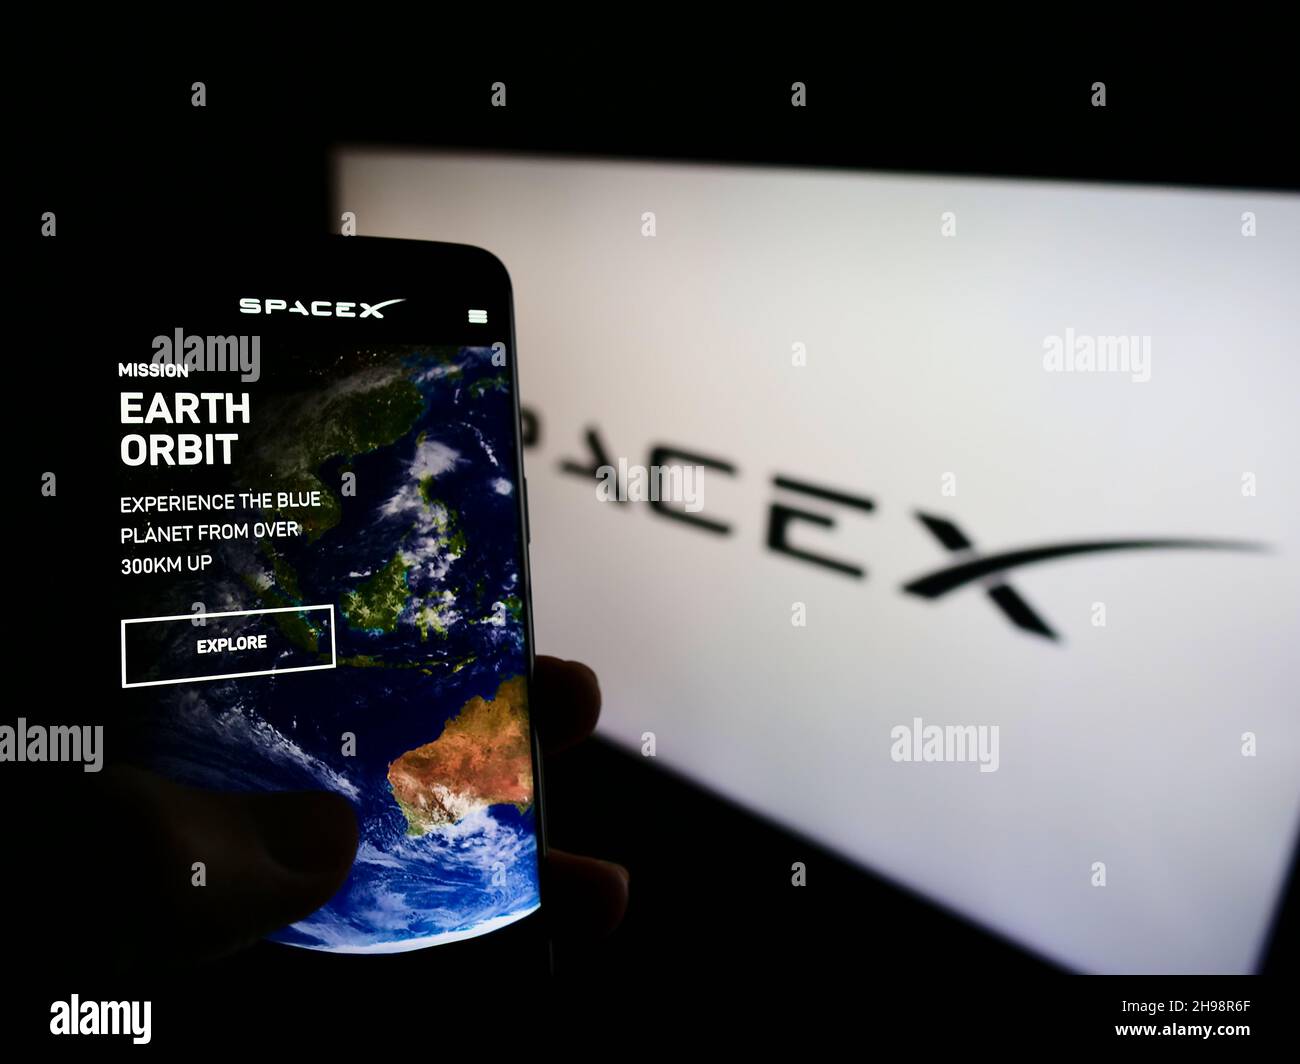 Personne tenant un smartphone avec le site Web de la société Space exploration technologies (SpaceX) à l'écran avec logo.Concentrez-vous sur le centre de l'écran du téléphone. Banque D'Images